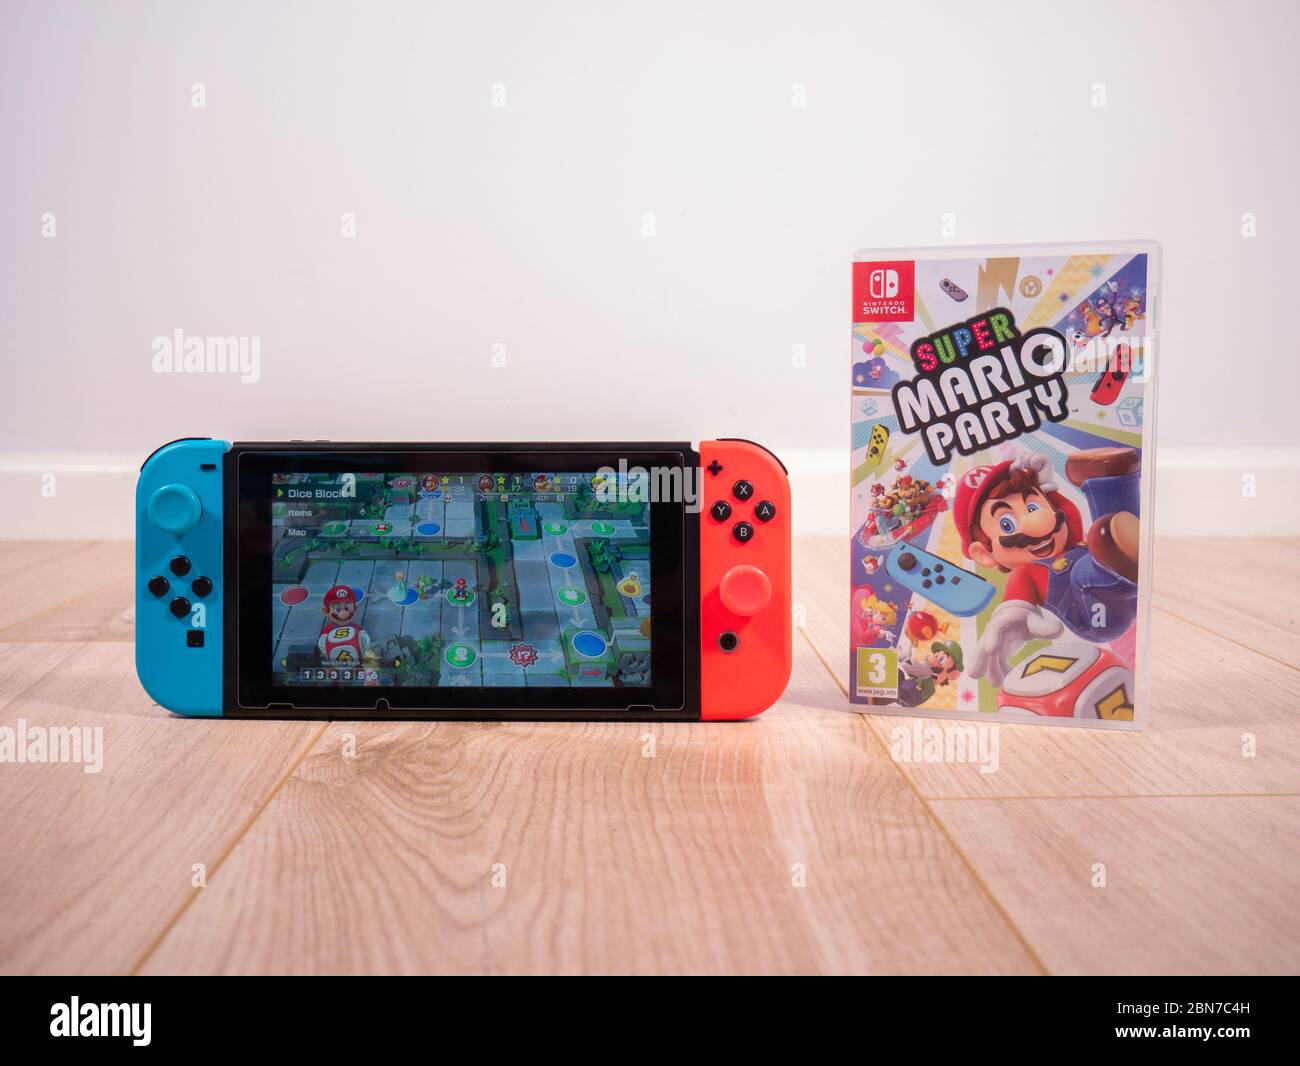 Mai 2020, UK: Nintendo Switch Konsole mit Mario Party Spiel weißen Studio Hintergrund Stockfoto